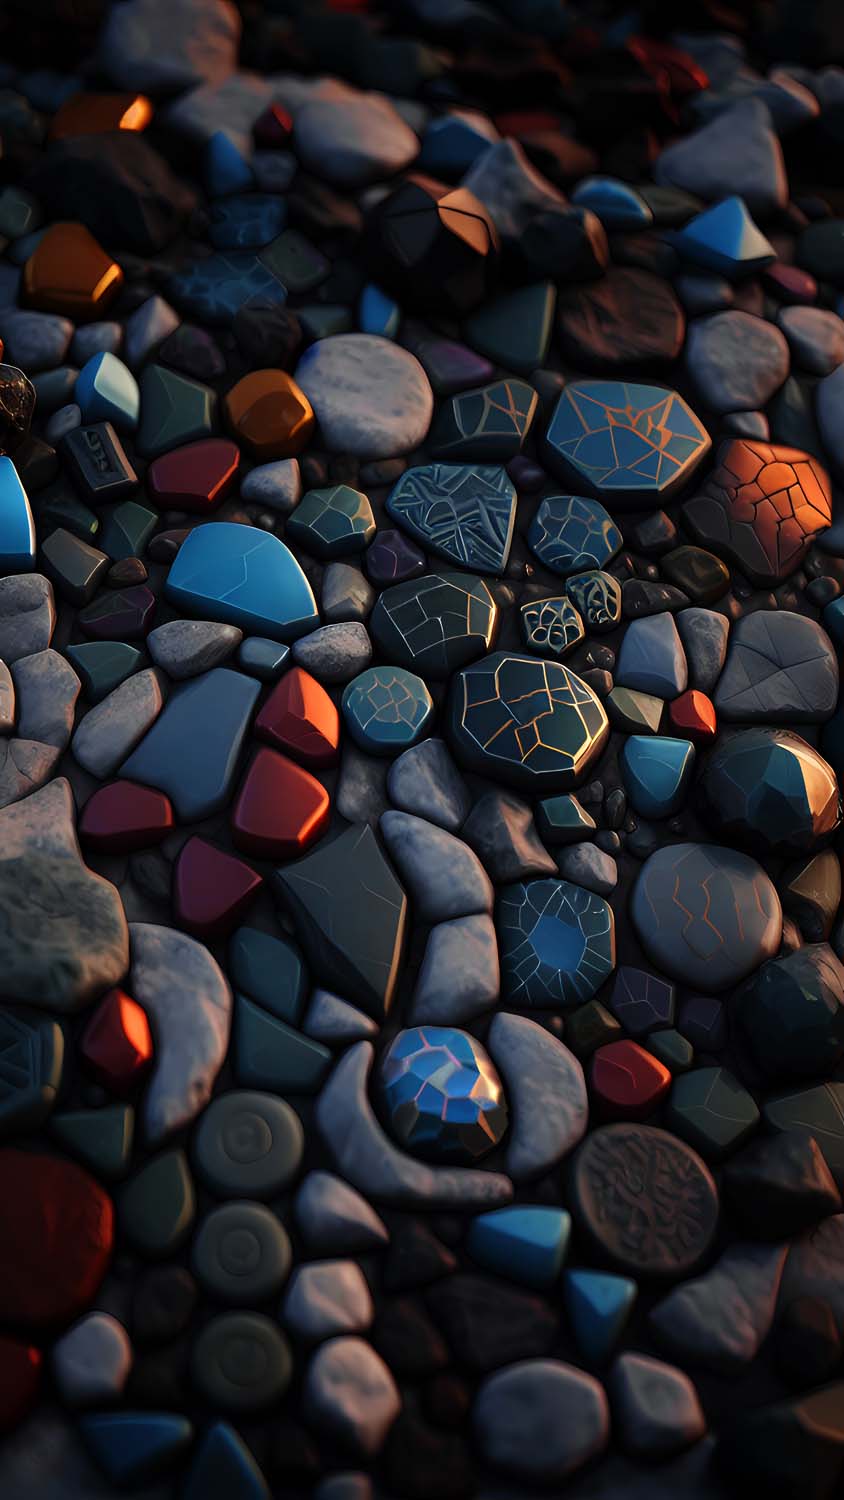 Pebbles Stones Art iPhone Wallpaper HD